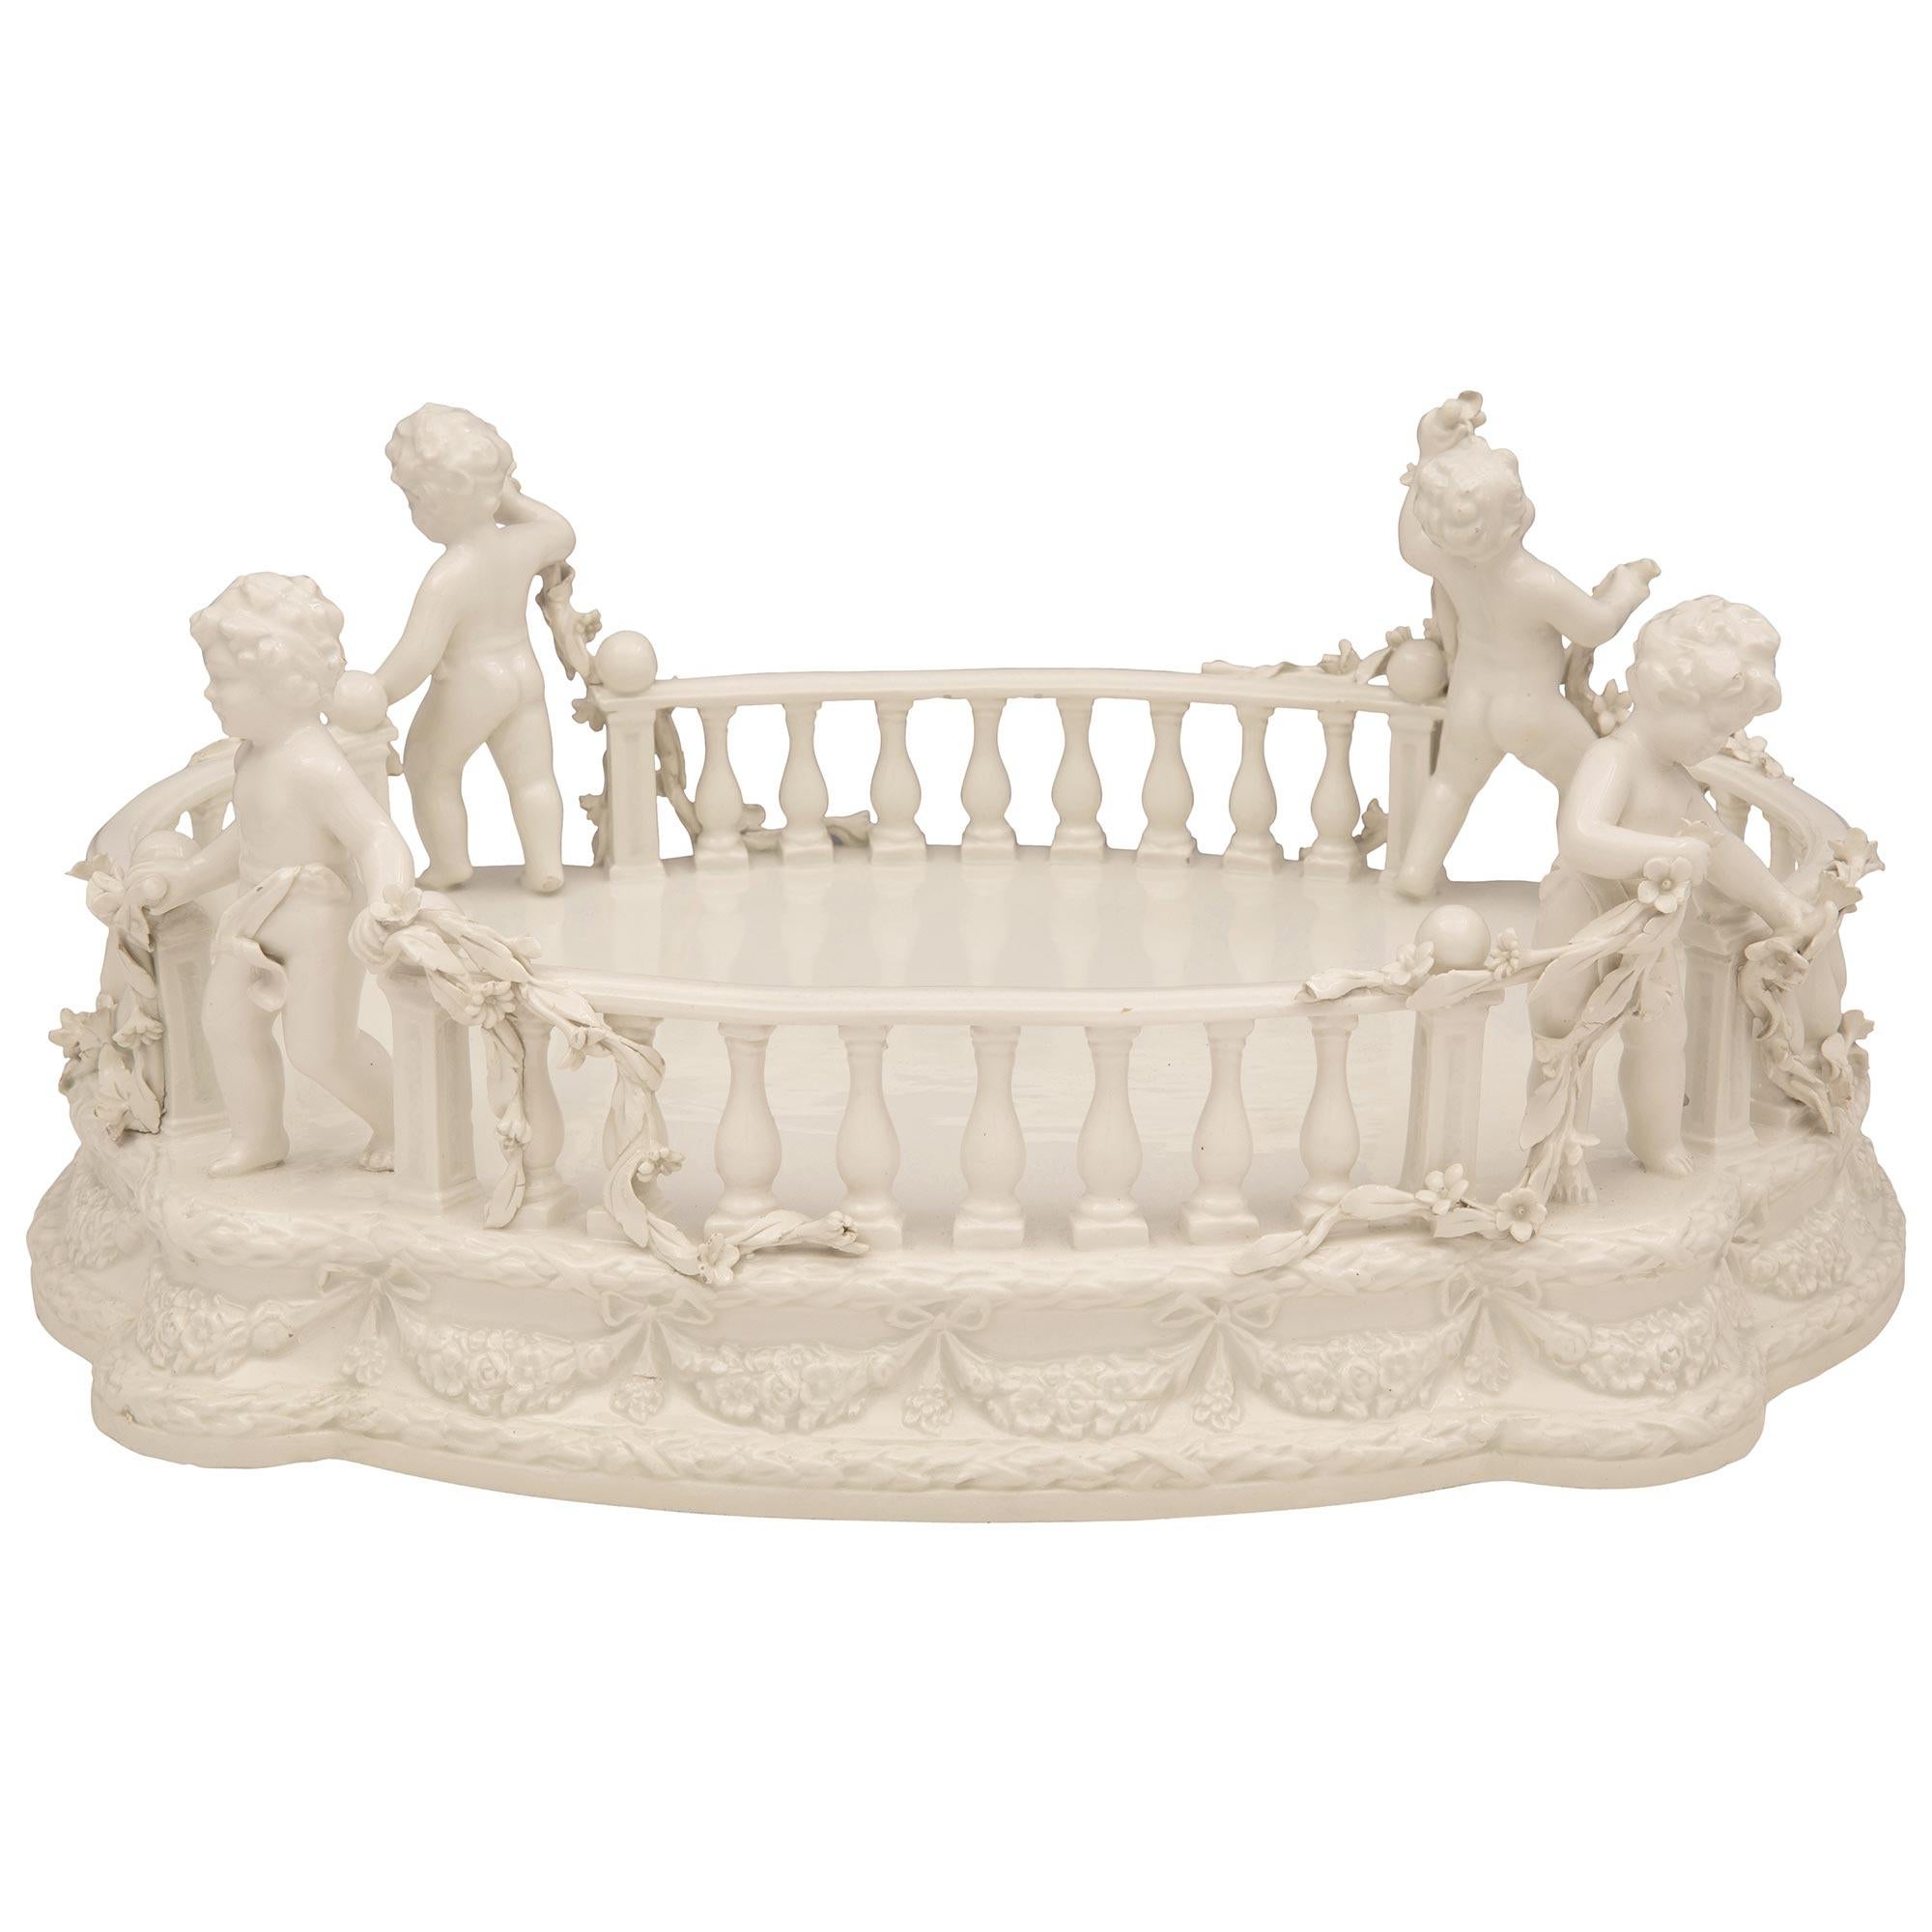 Charmant centre de table en porcelaine blanche italienne du XIXe siècle, signé Bassano. Le centre de table est surélevé par une jolie base festonnée, avec des bandes de lauriers berry finement nouées et de belles guirlandes florales qui s'étendent